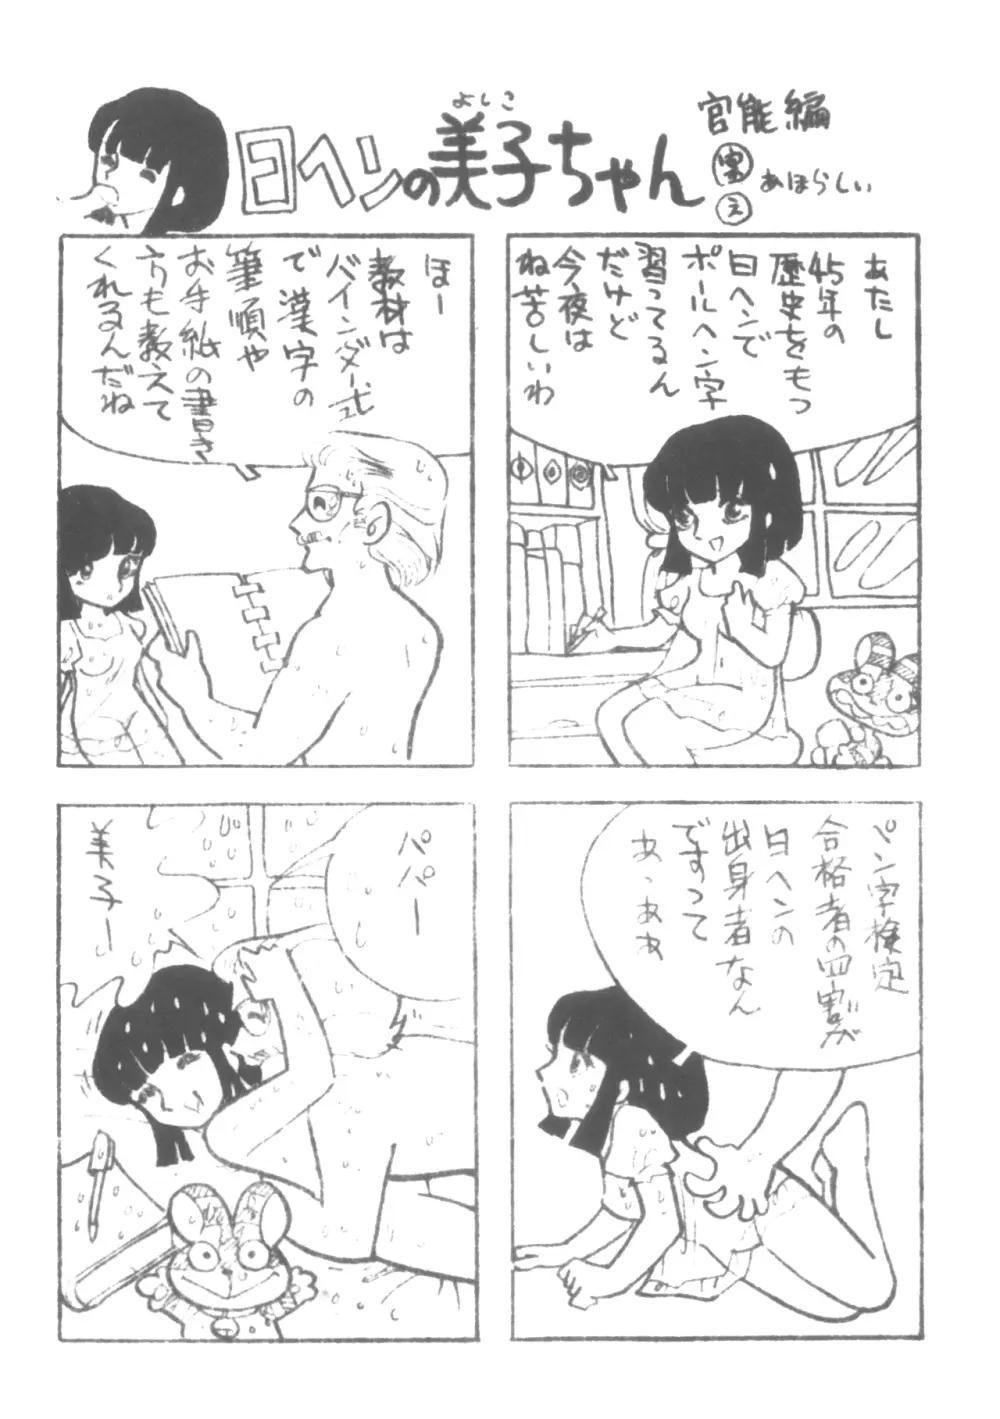 シベール 予告&原稿募集号 Vol.0 - page6